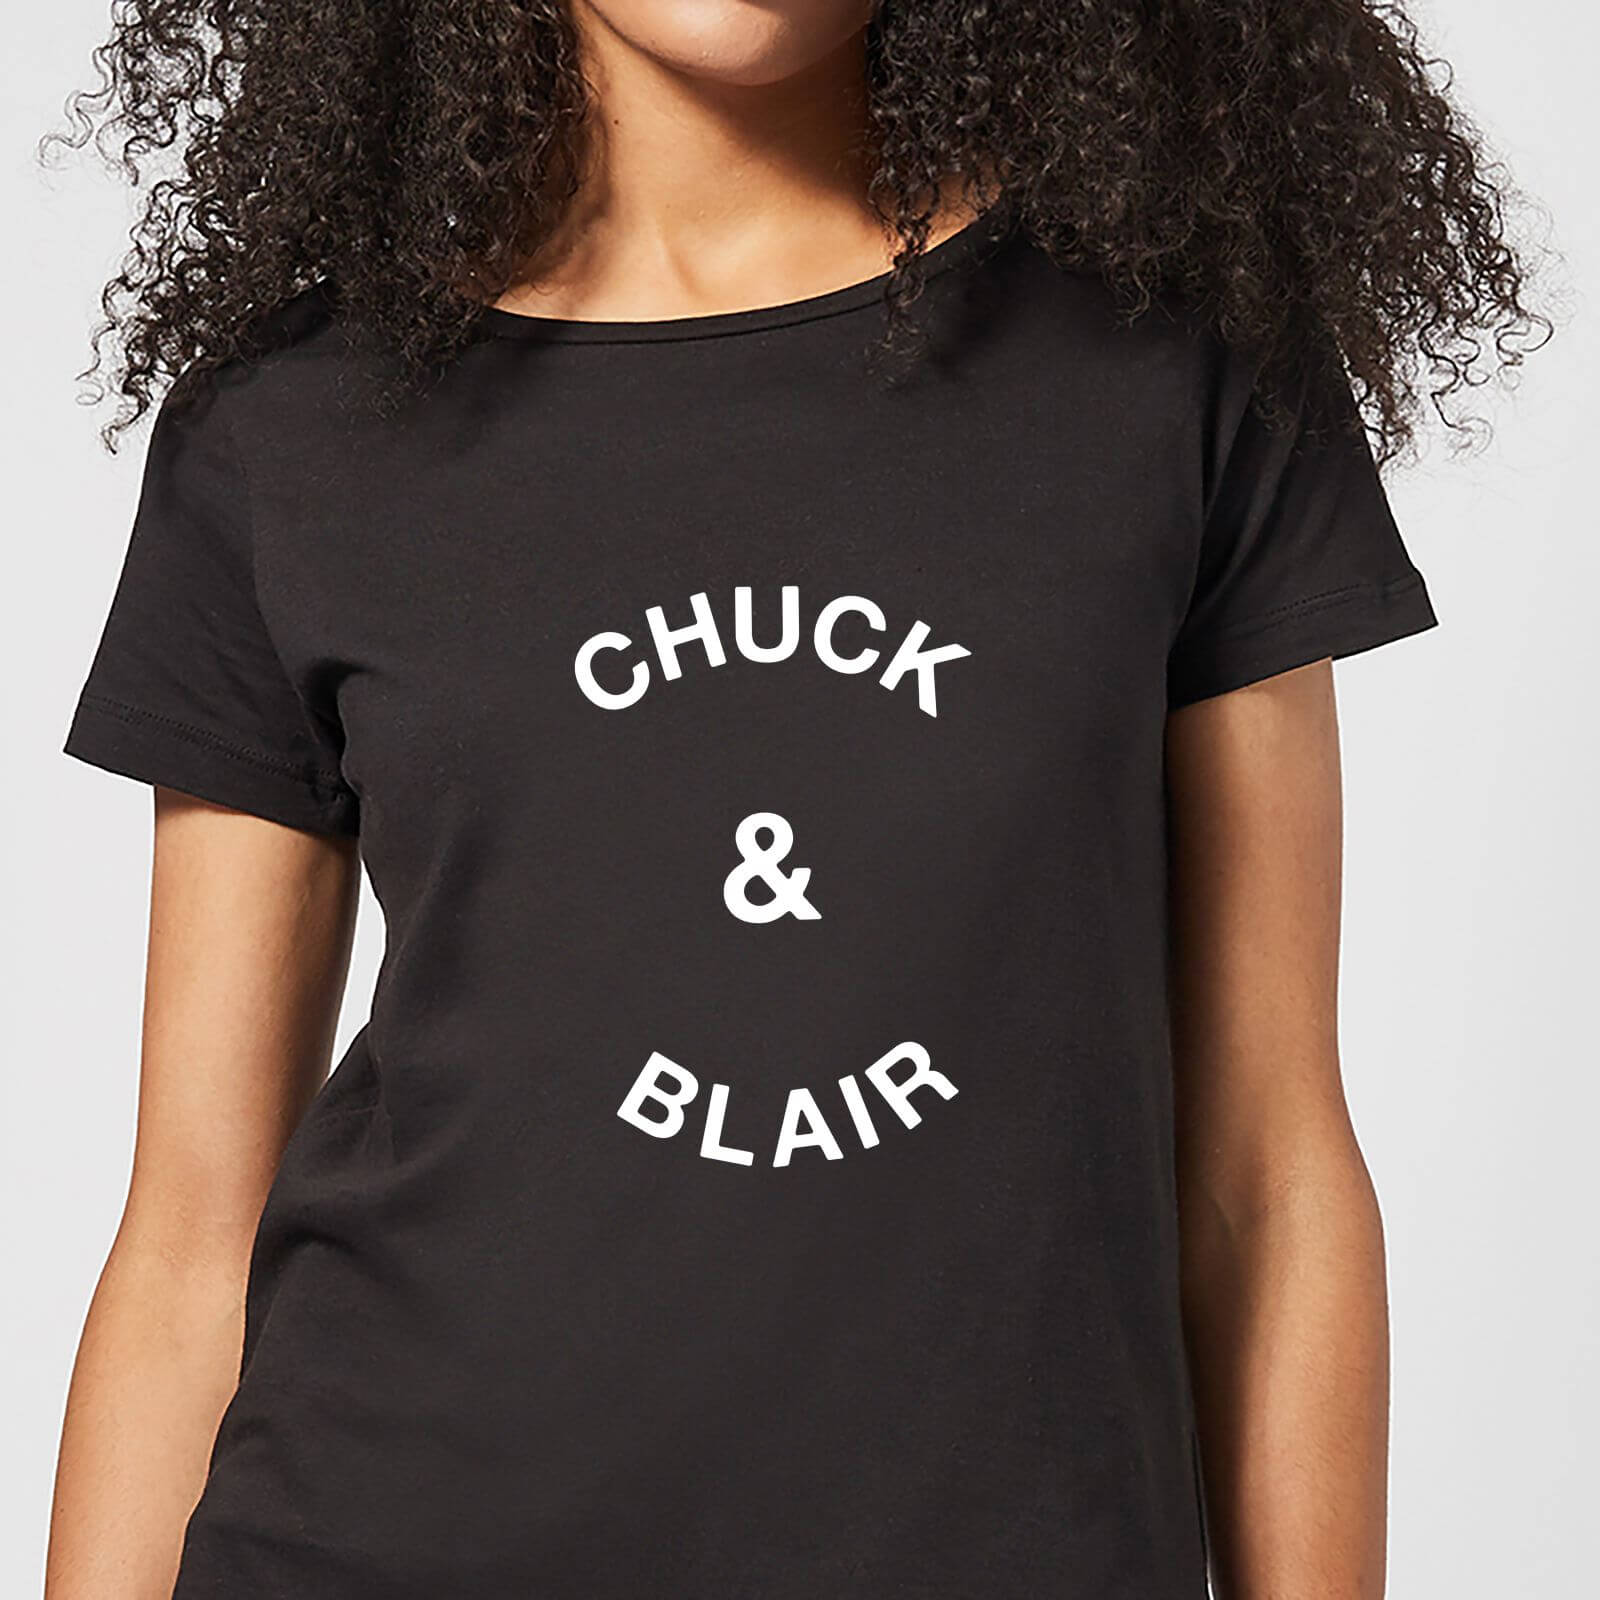 Chuck & Blair Women's T-Shirt - Black - XXL - Black